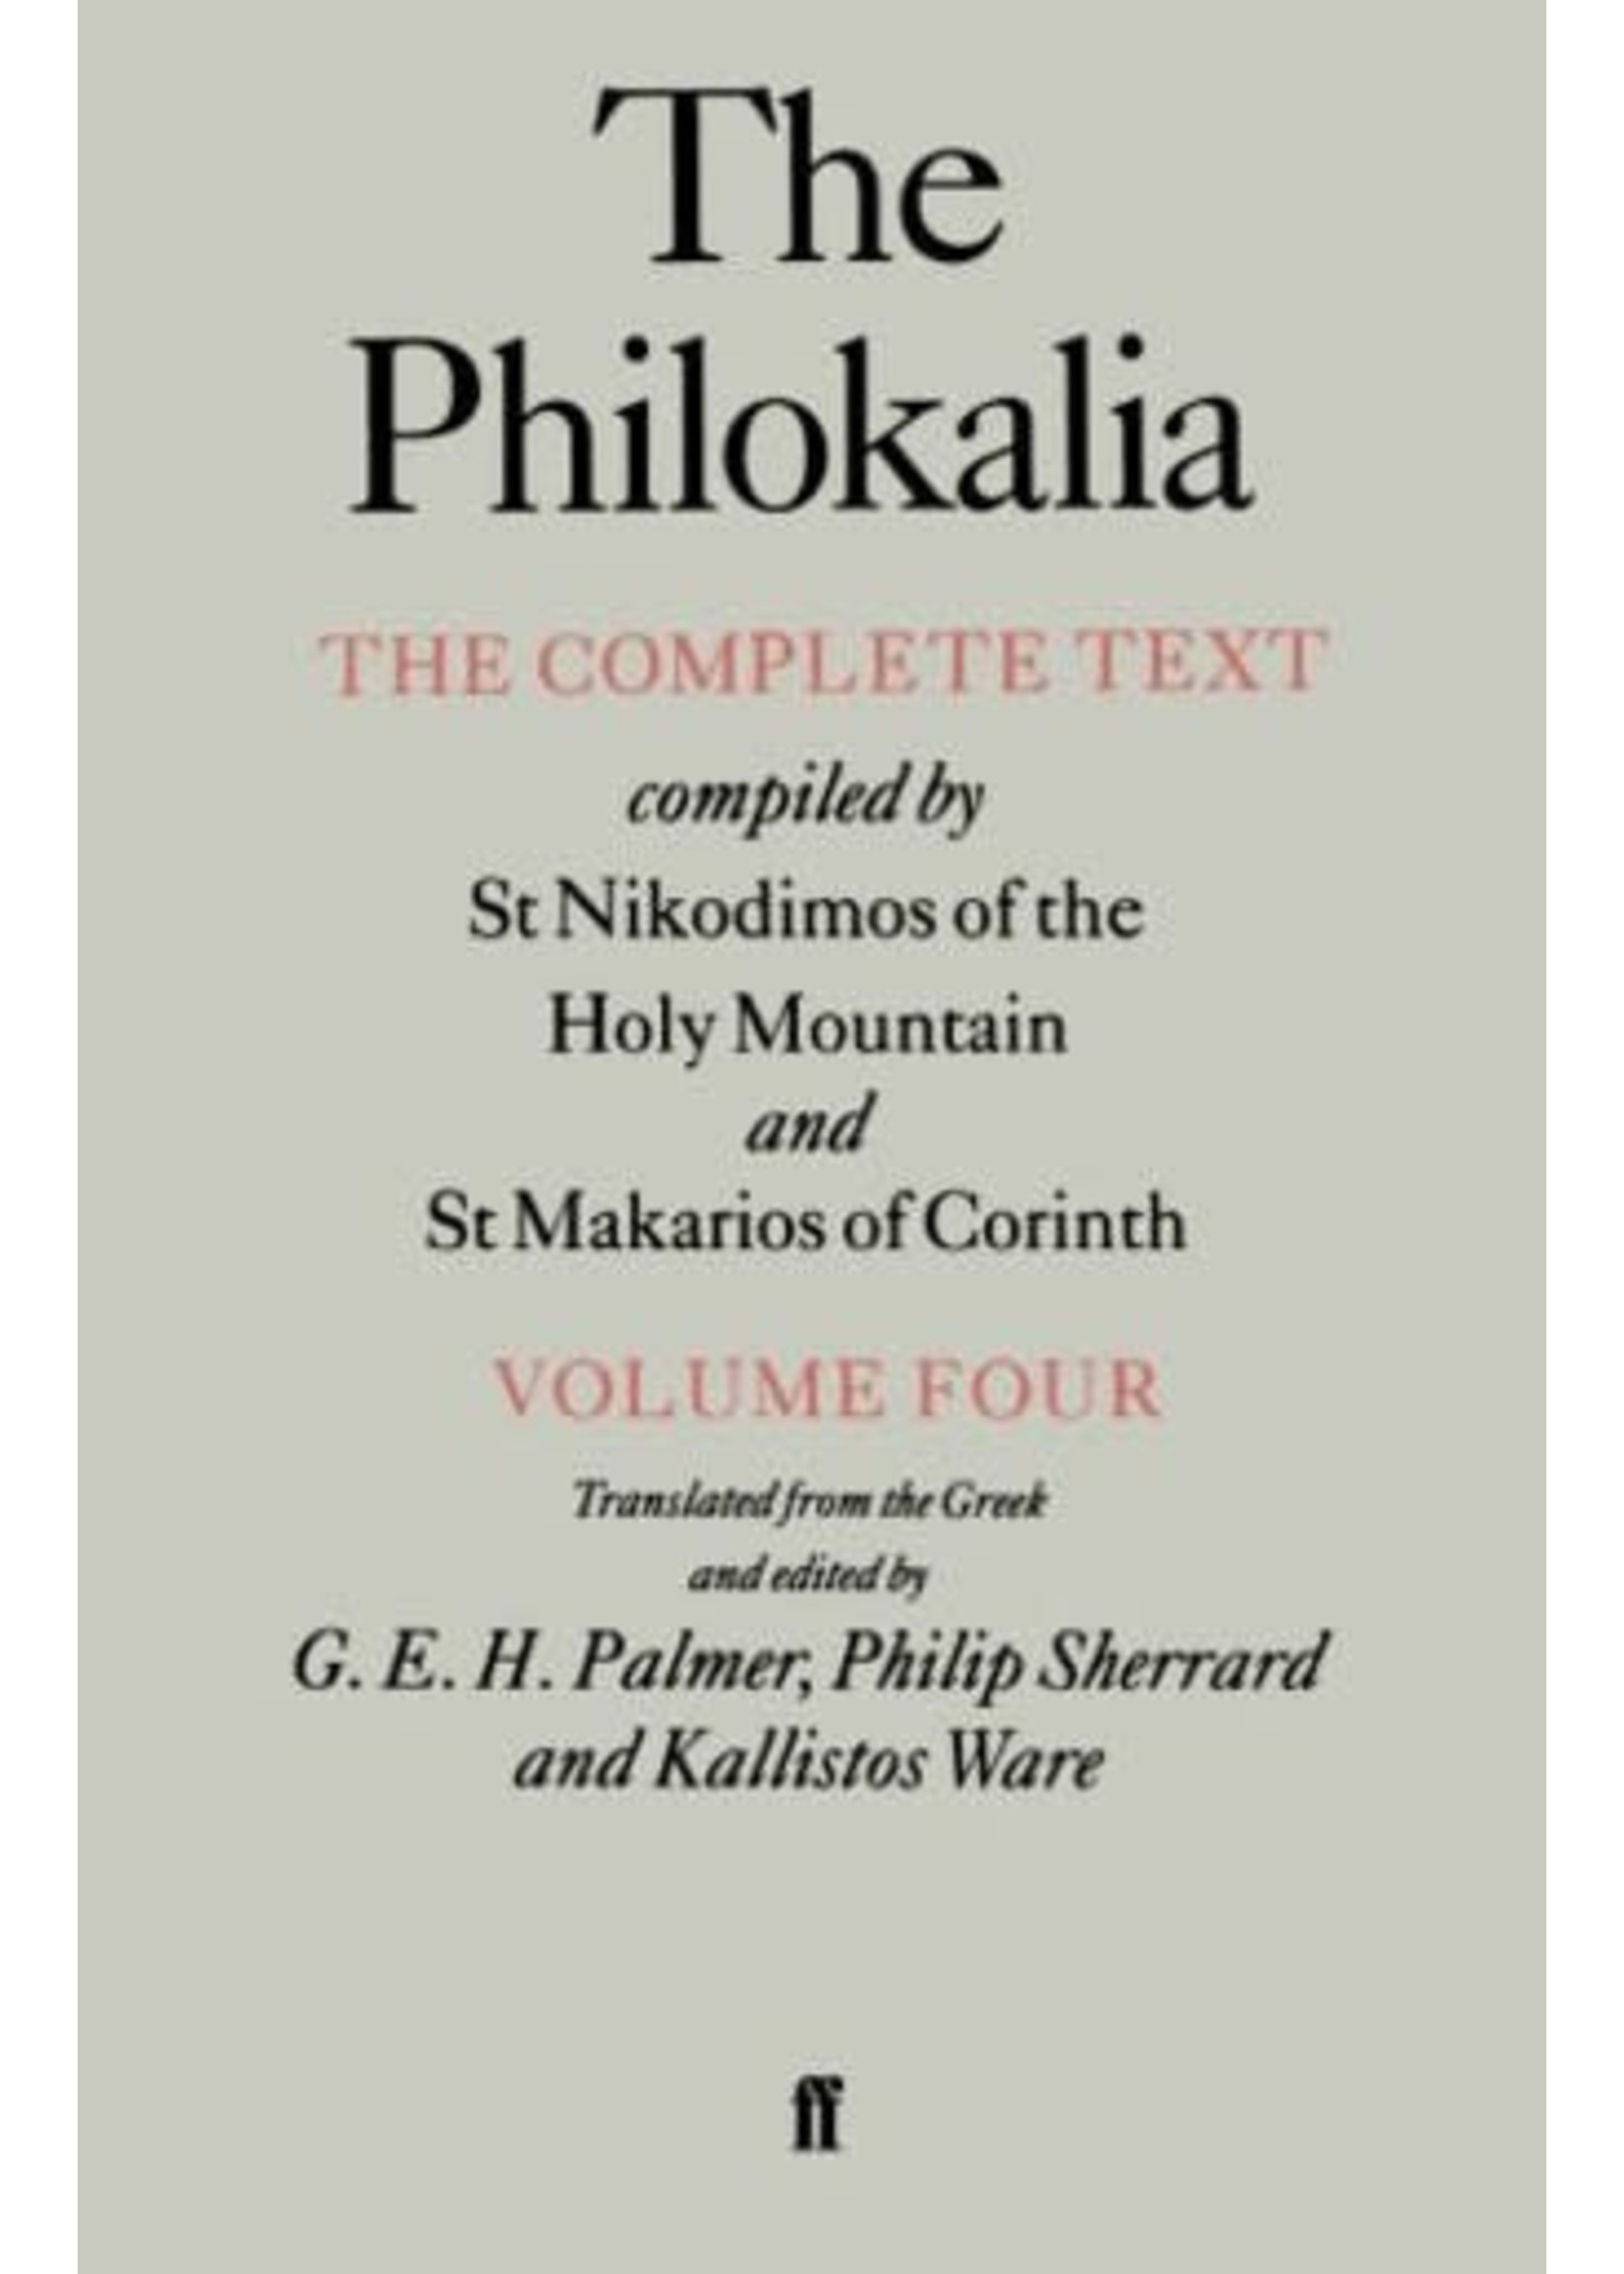 Philokalia, vol 4